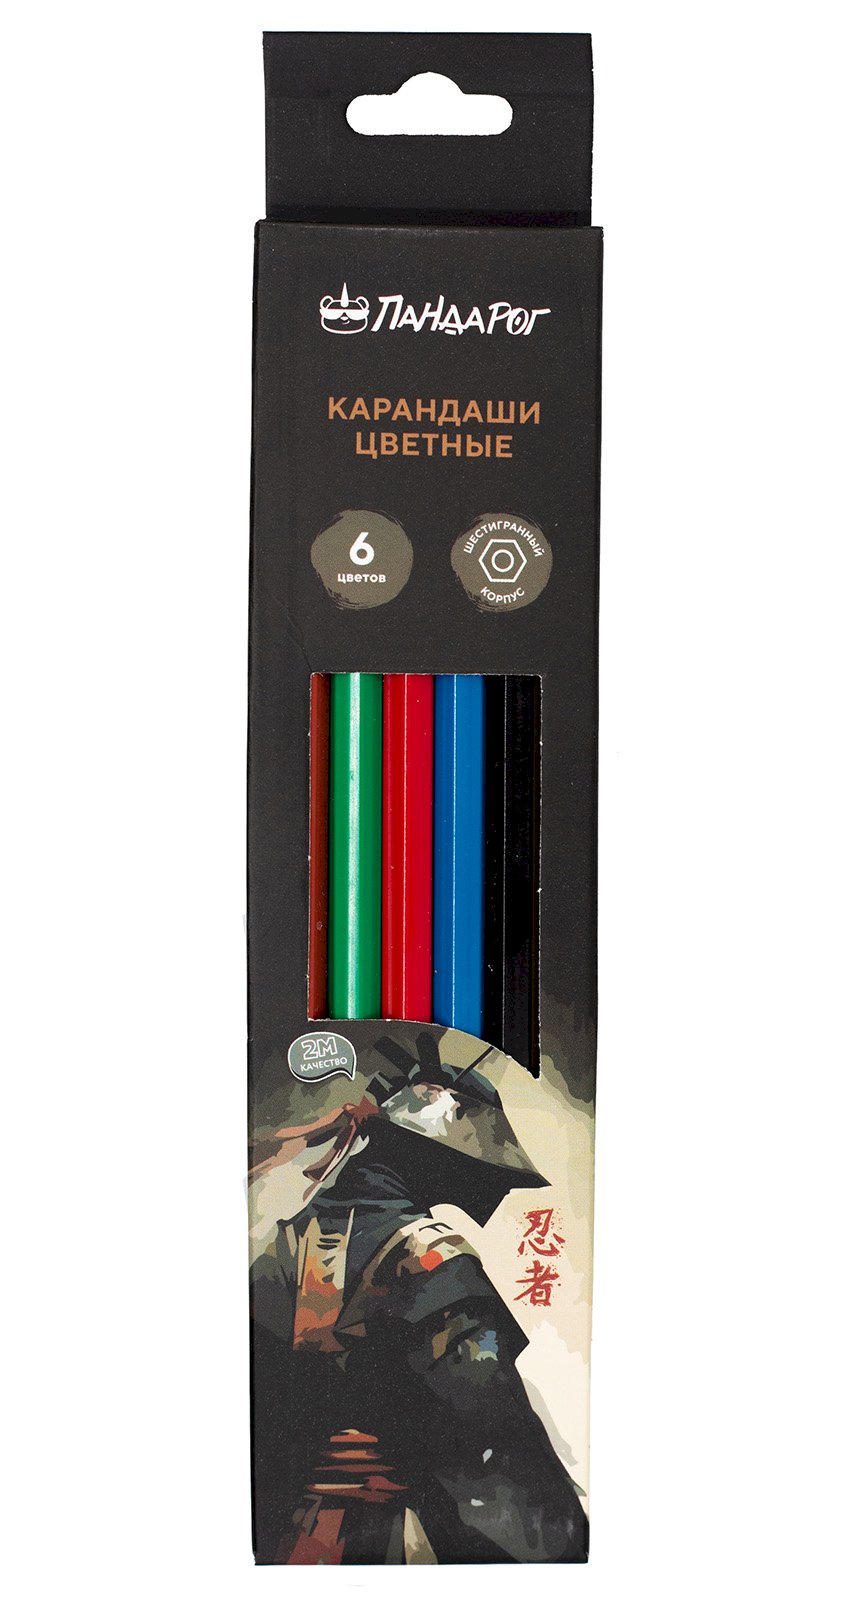 Карандаши цветные ПандаРог Ниндзя, 6 цветов, пластиковые, шестигранные